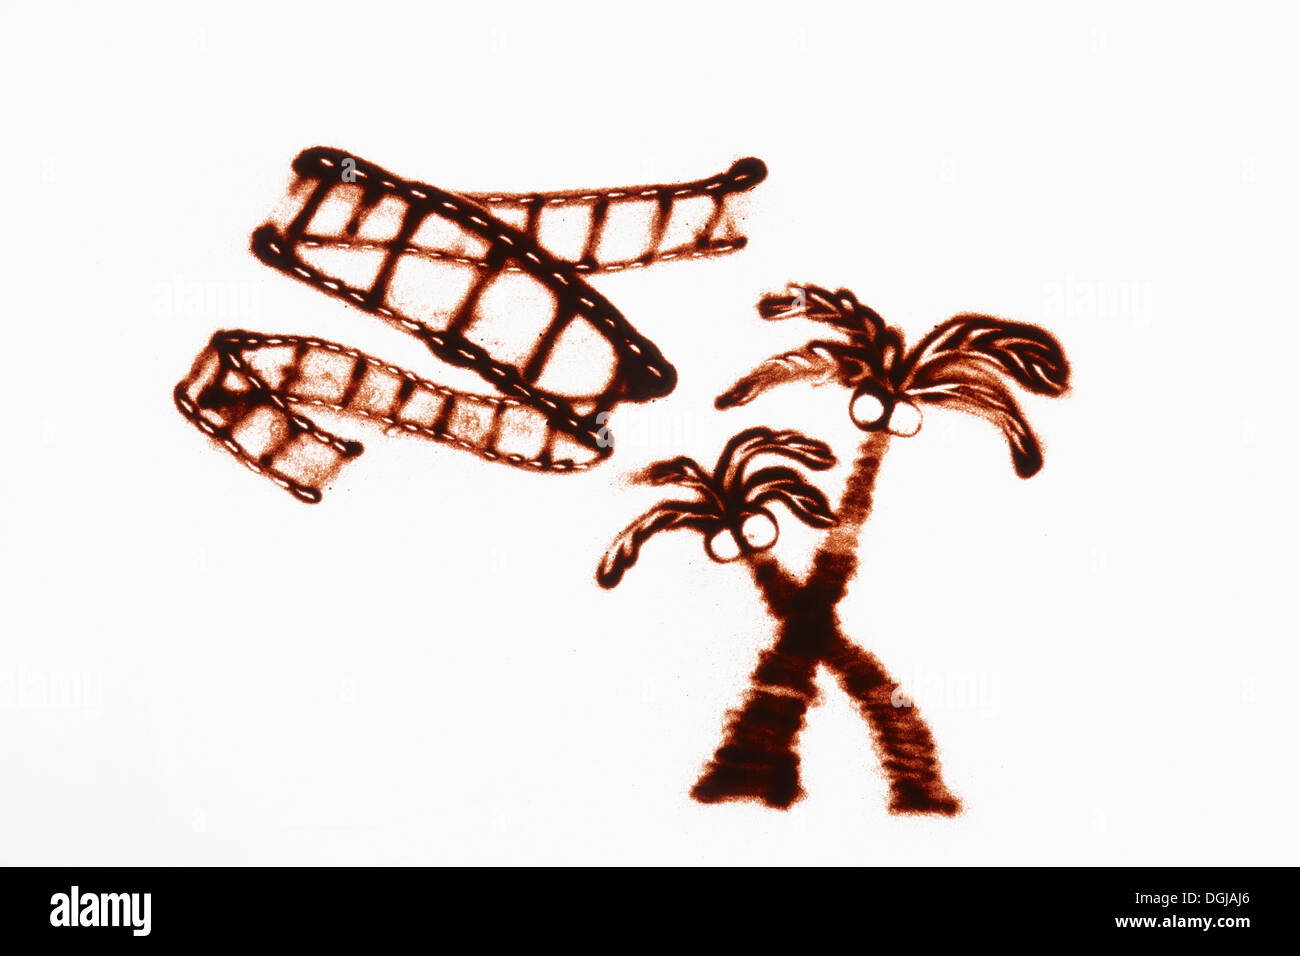 Un dessin sur sable de palmiers Banque D'Images